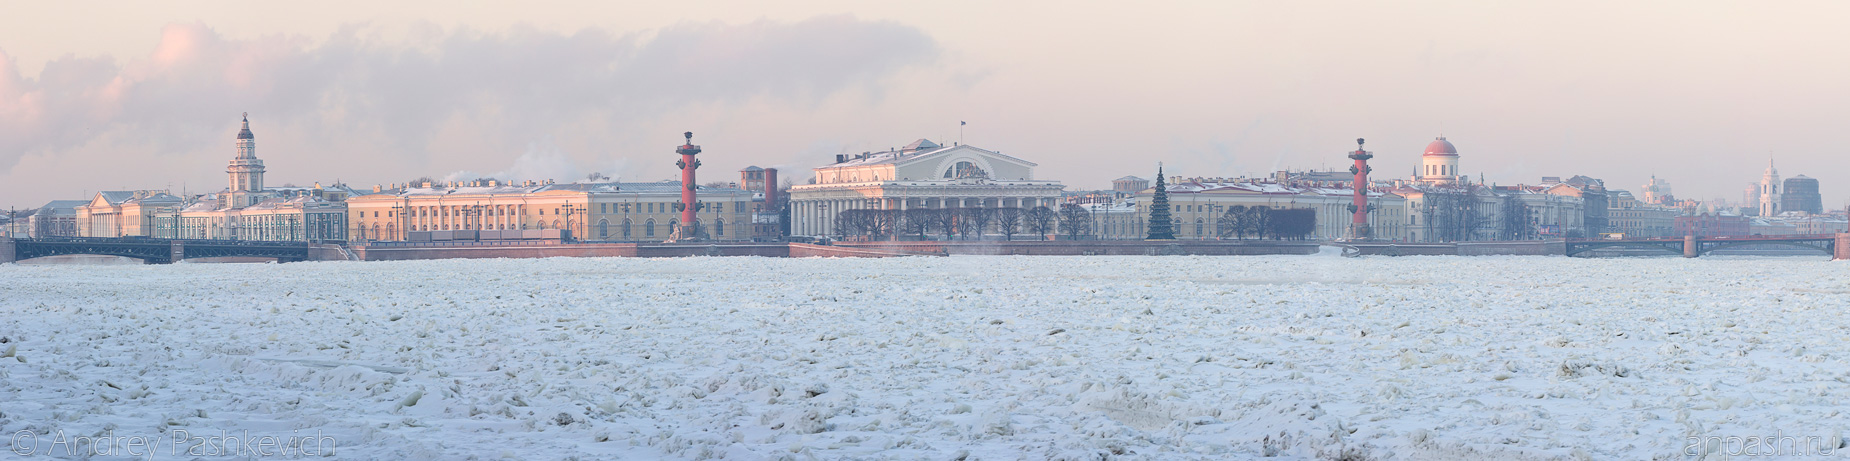 Красивые и необычные панорамные фотографии Санкт-Петербурга 1